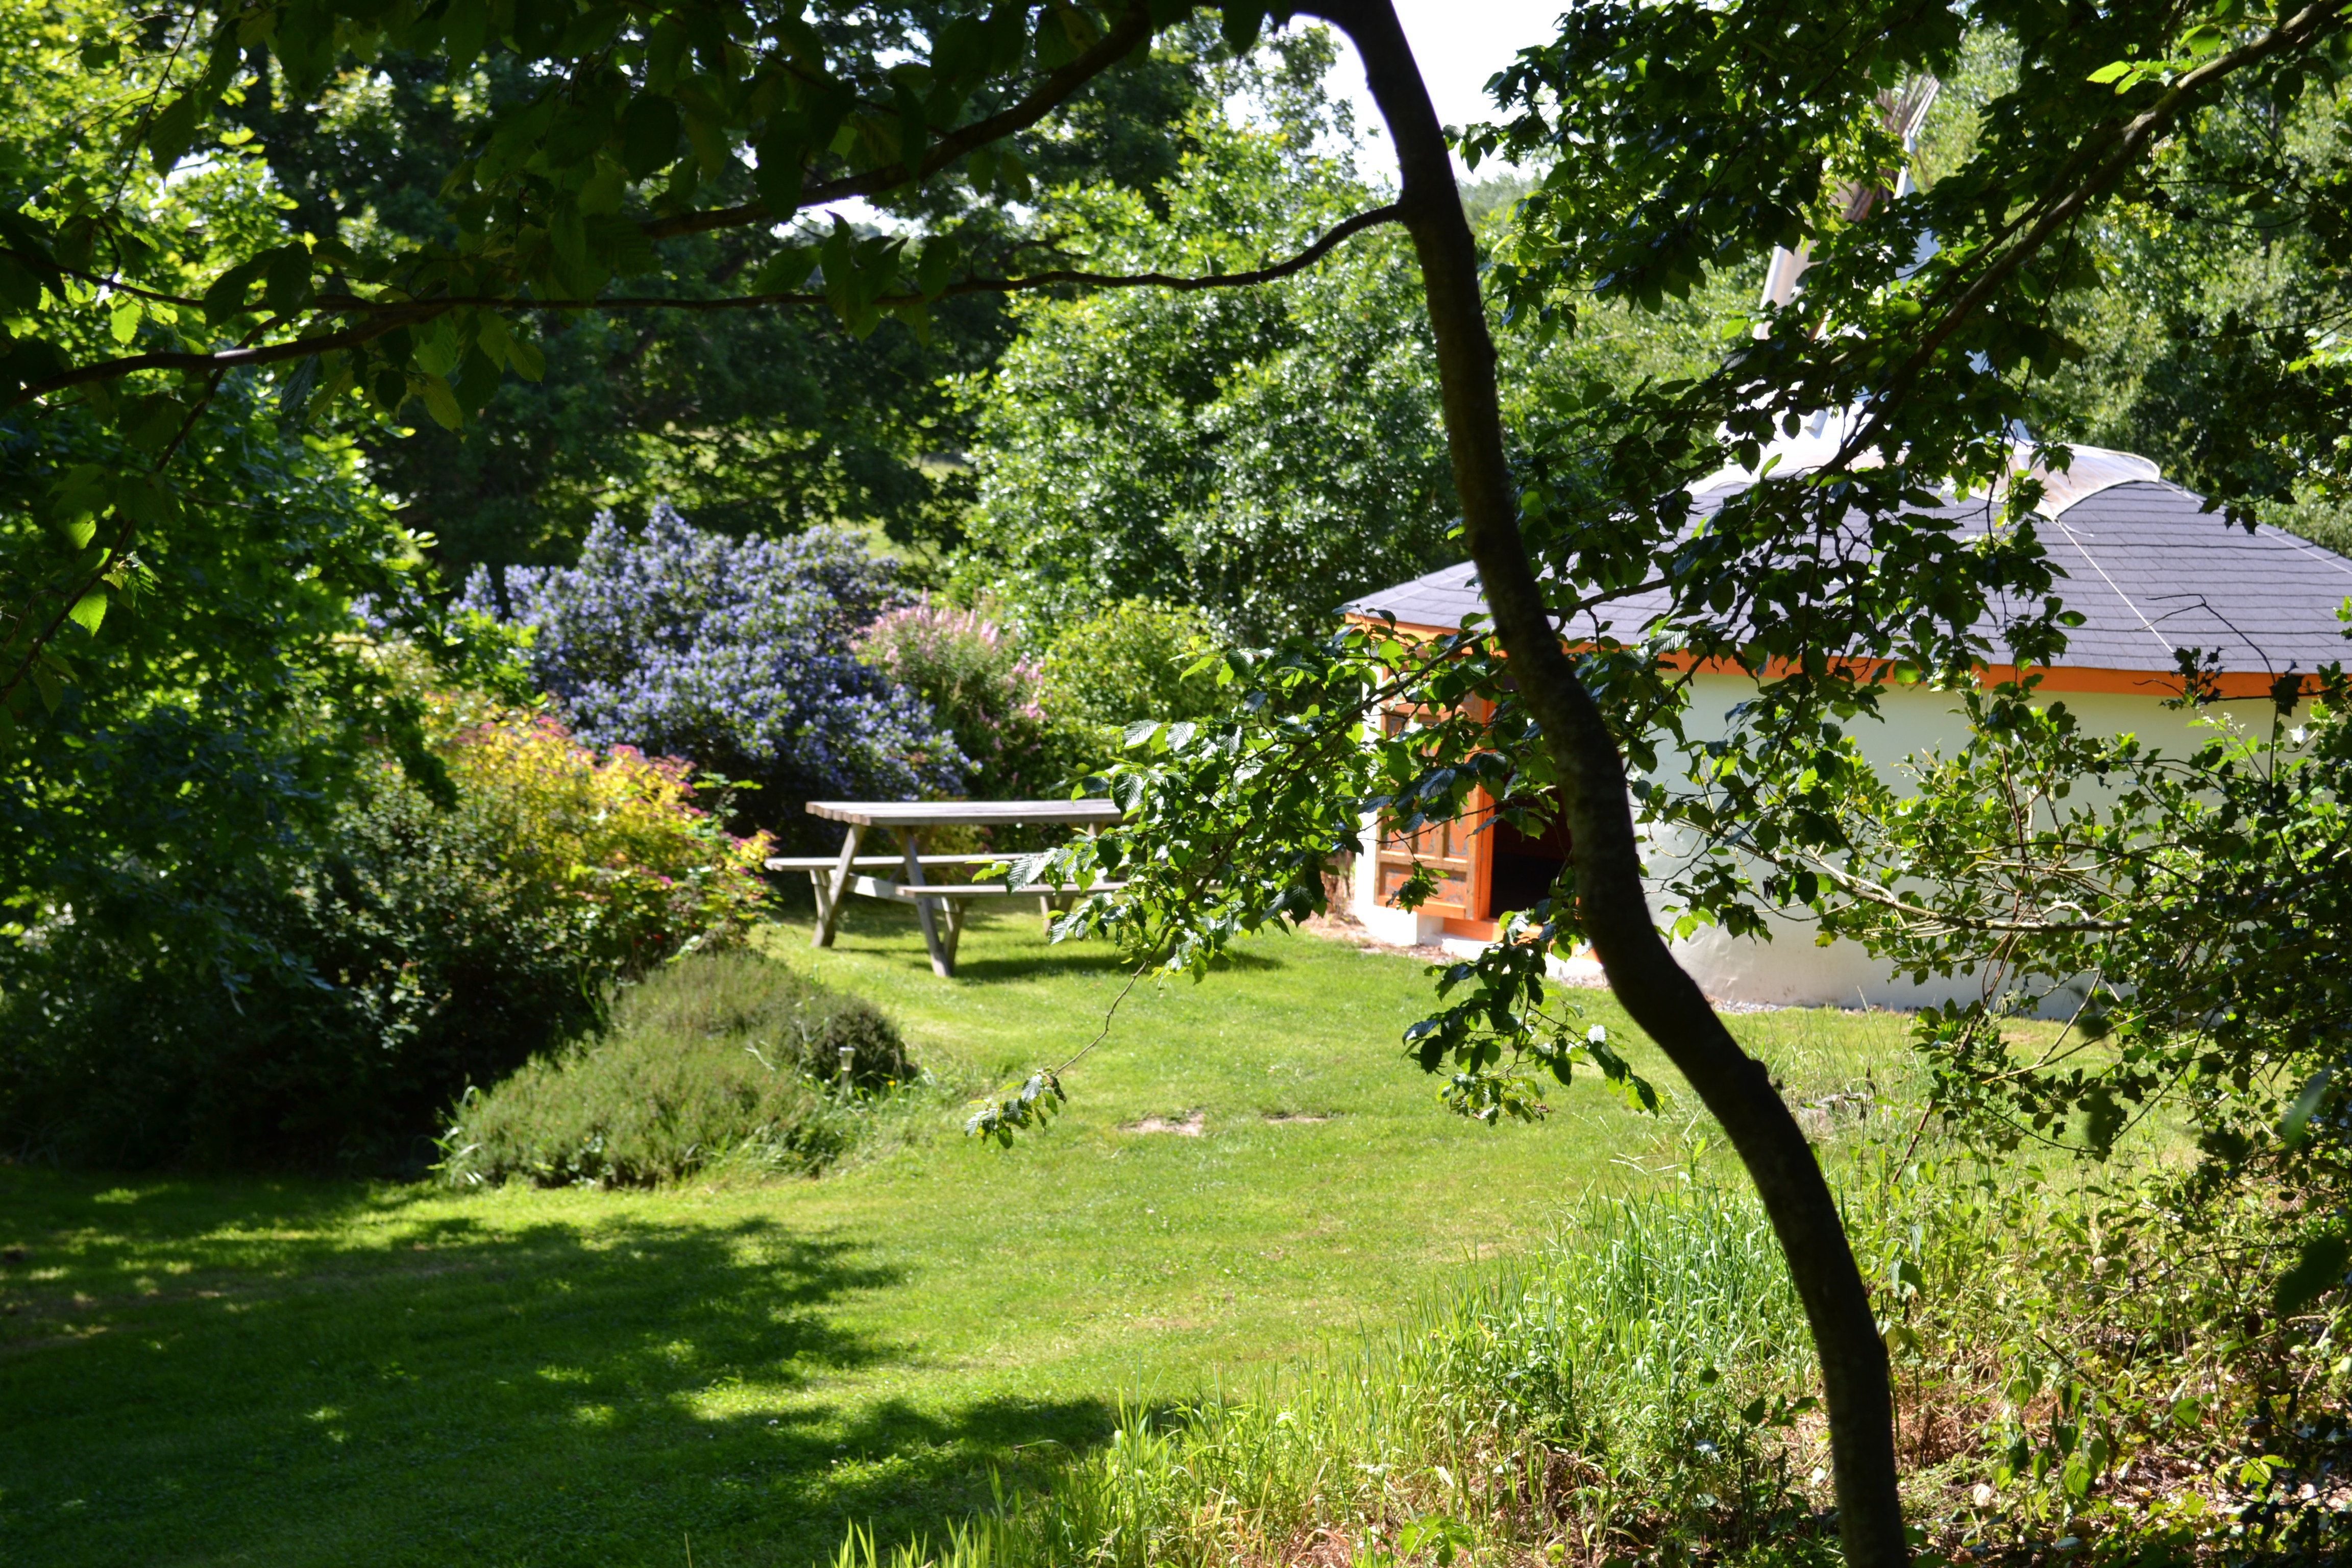 Vous apprécierez le calme et la tranquilité du jardin paysagé, en harmonie totale avec la yourte et le tipi. Vivez un moment de détente et de bien-être, offrez-vous un séjour insolite.